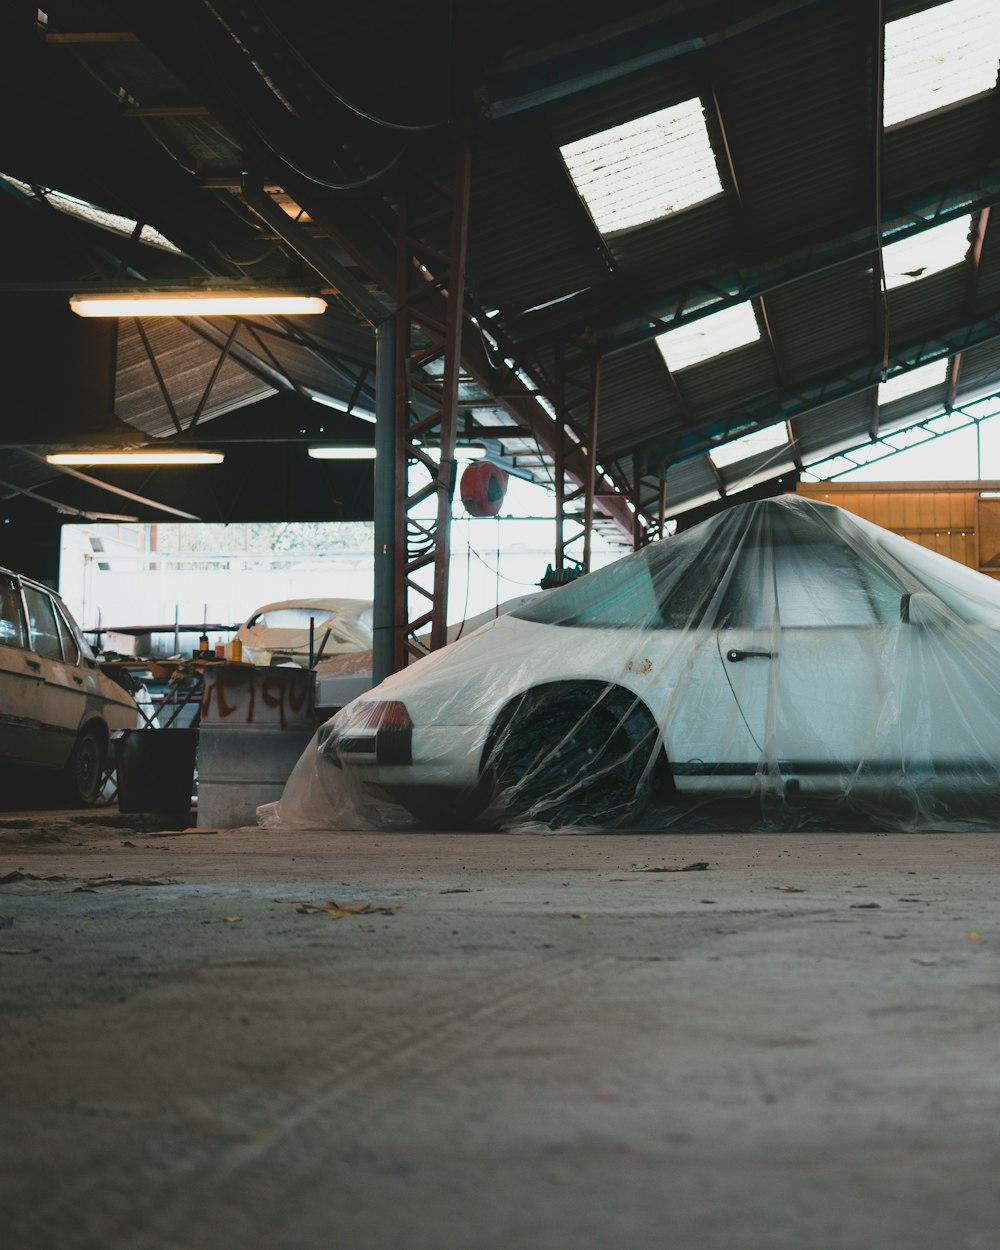 a car covered in a tarp in a garage